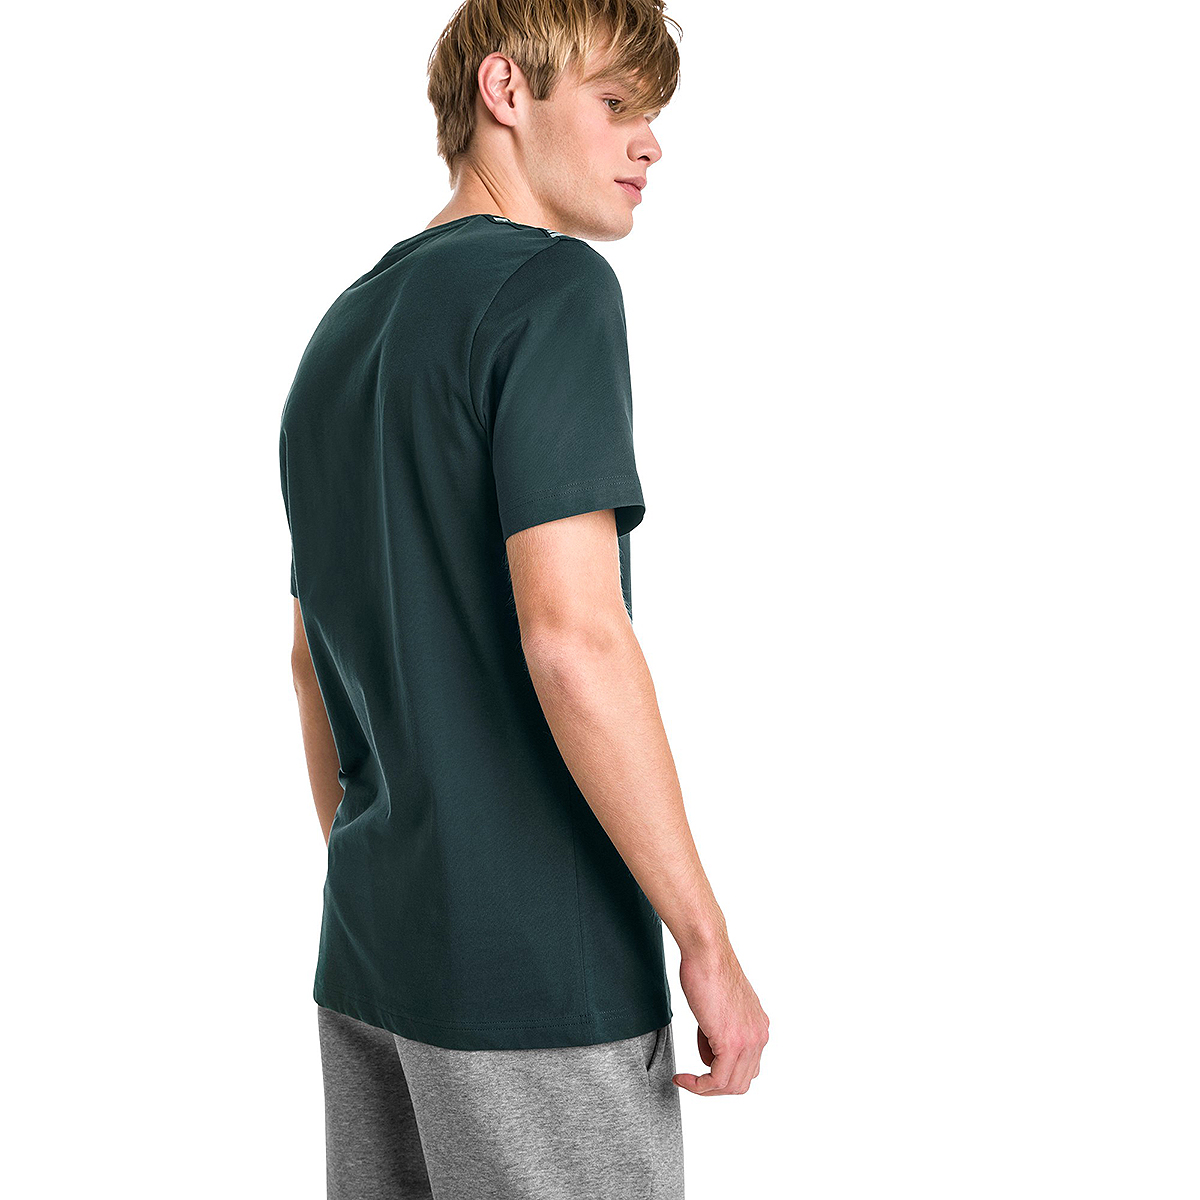 PUMA Herren Amplified Tee T-Shirt grün 854655 30